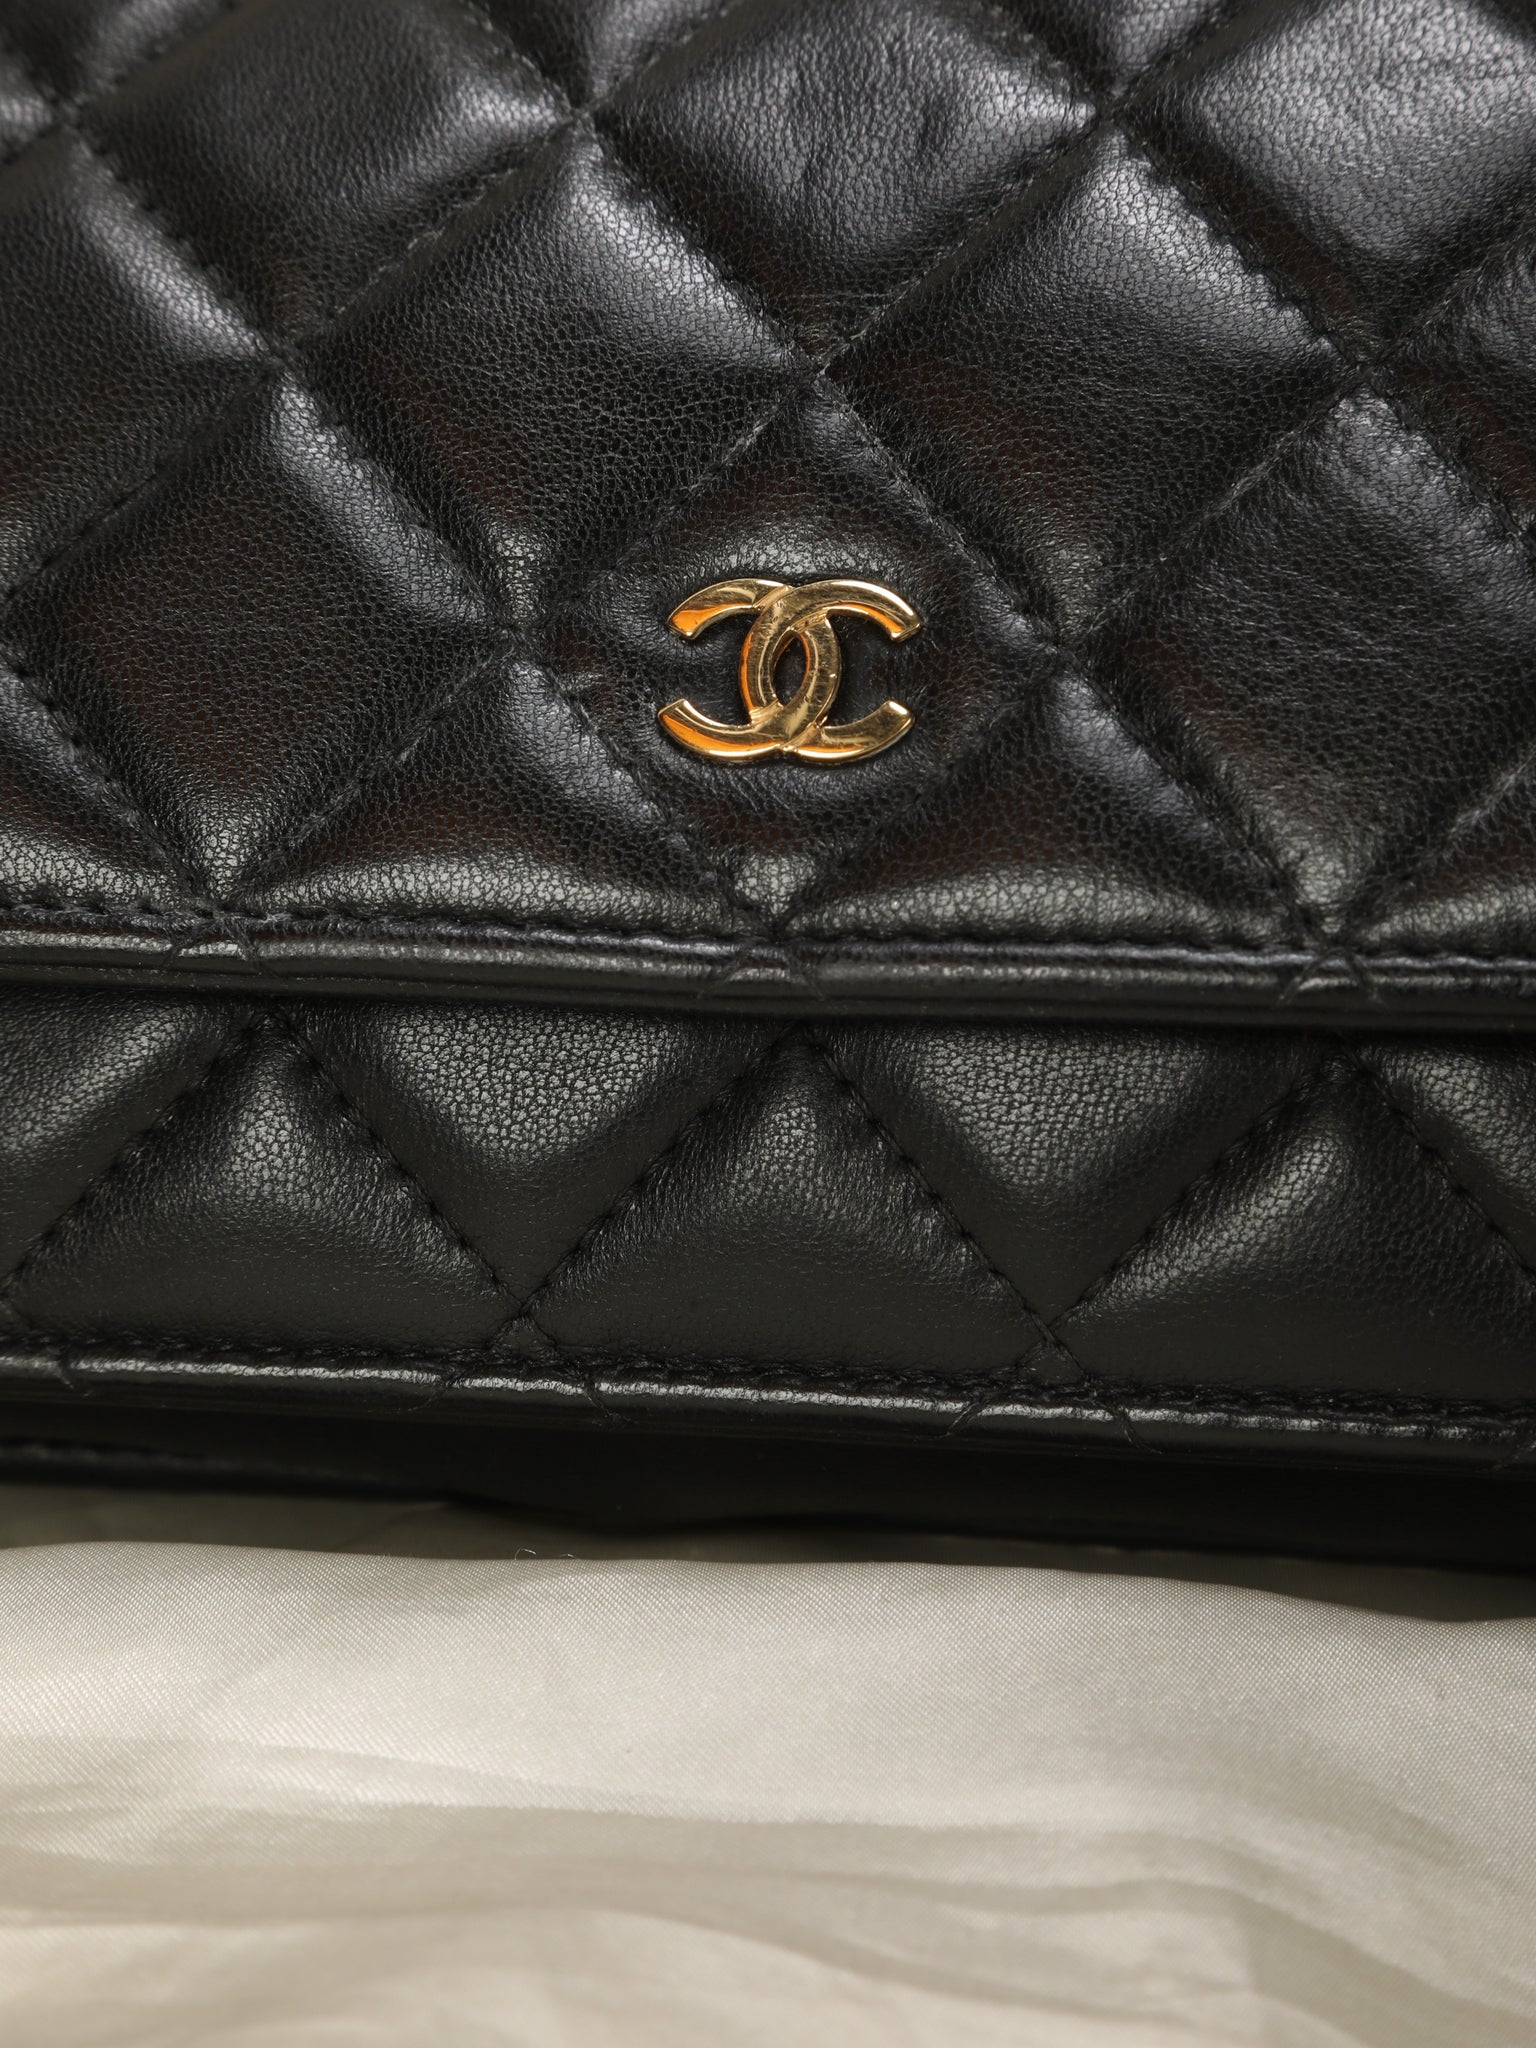 Chanel Lambskin Wallet On Chain